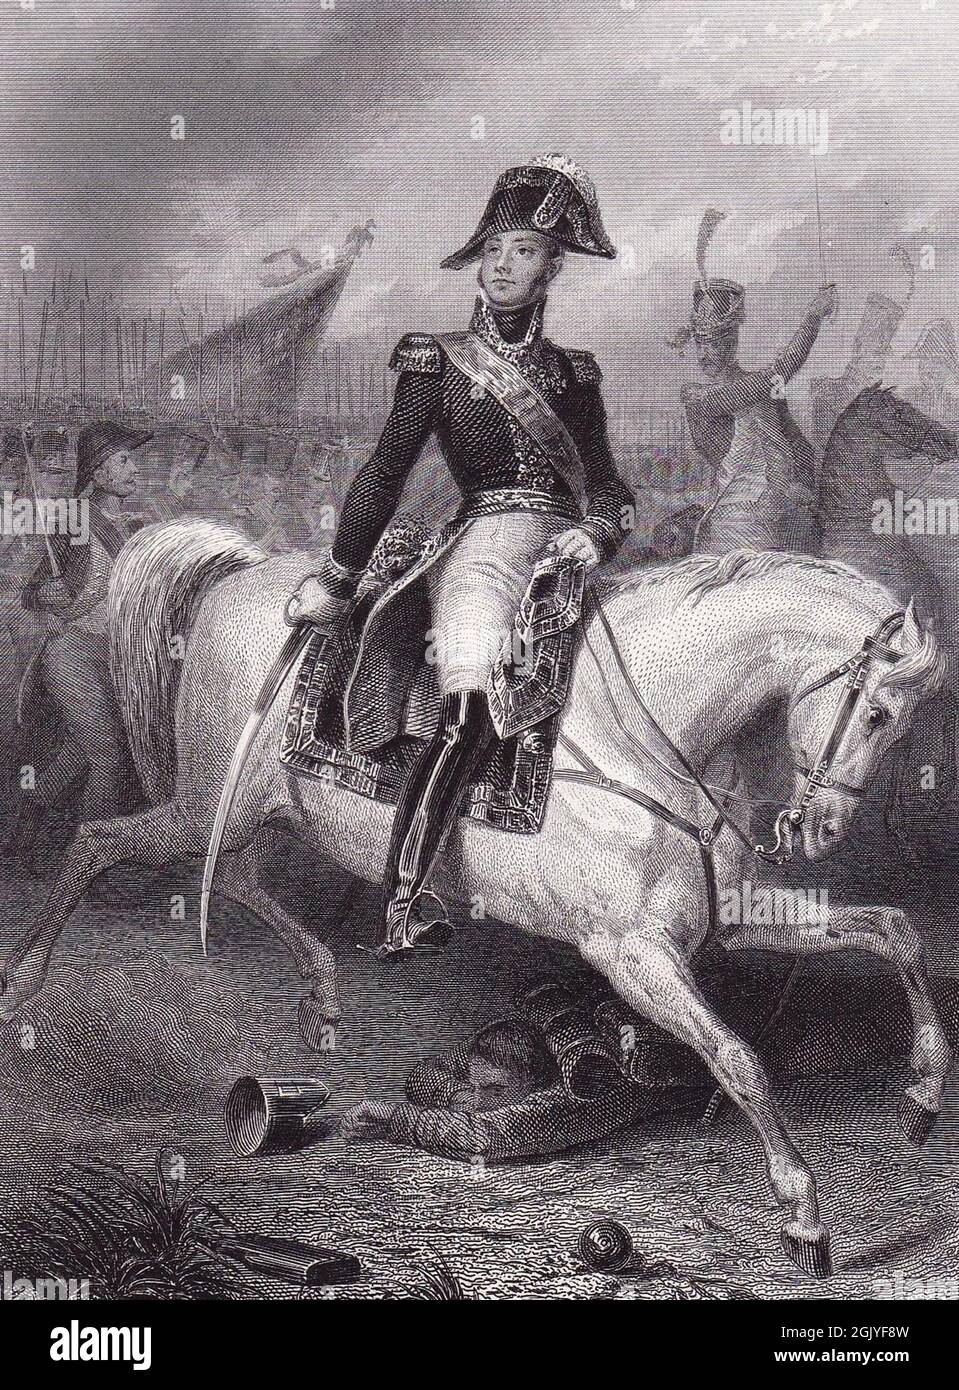 Maresciallo Étienne Jacques MacDonald. Maréchals fidato di Napoleone. Napoleone promosse i suoi uomini solo per merito, non per titolo, che gli diede un esercito formidabile durante le guerre napoleoniche. Foto Stock